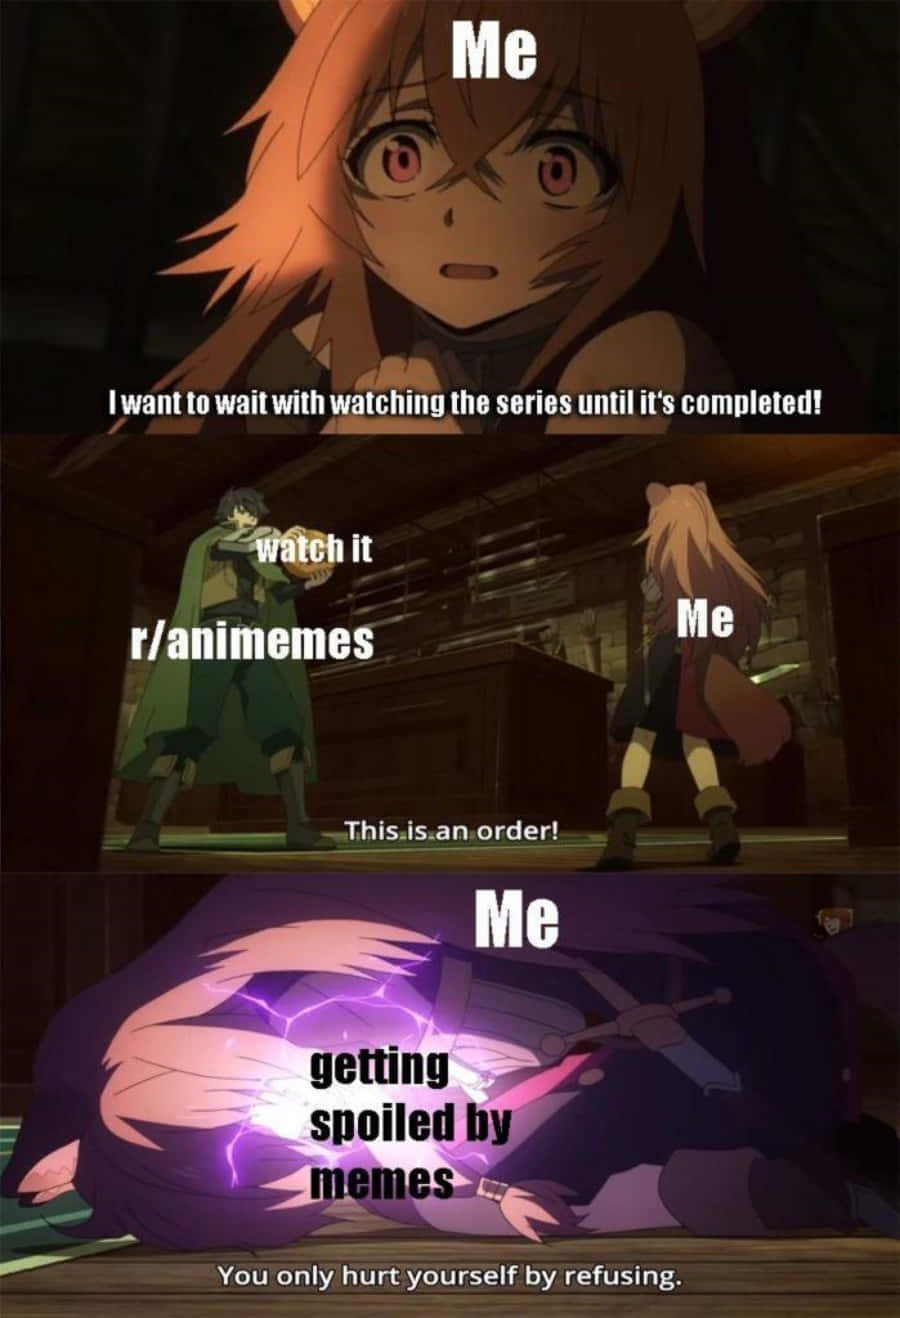 Anime pfp go away, /r/memes